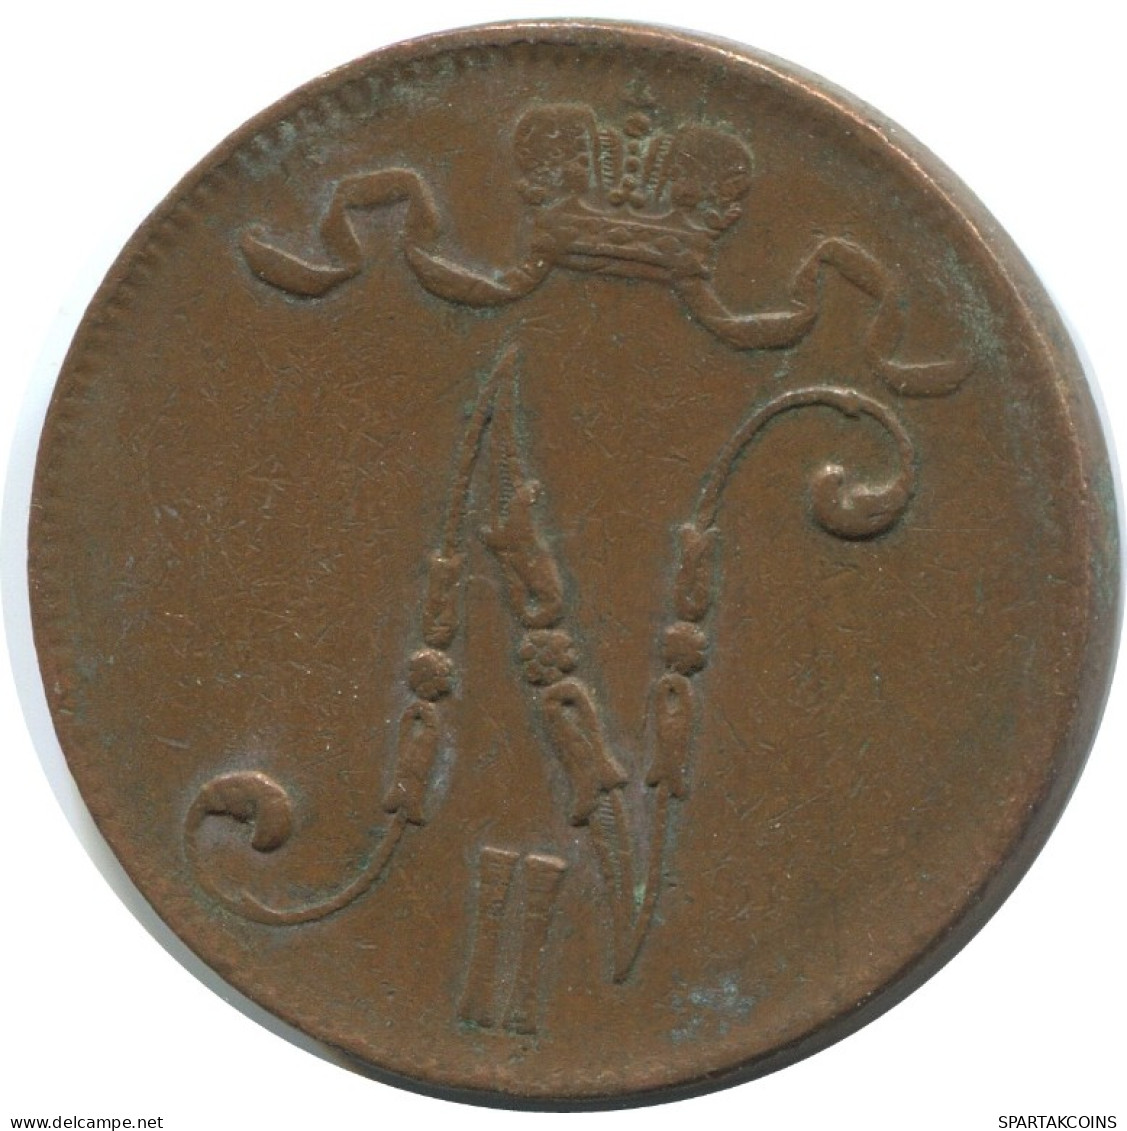 5 PENNIA 1916 FINLANDIA FINLAND Moneda RUSIA RUSSIA EMPIRE #AB263.5.E.A - Finlande